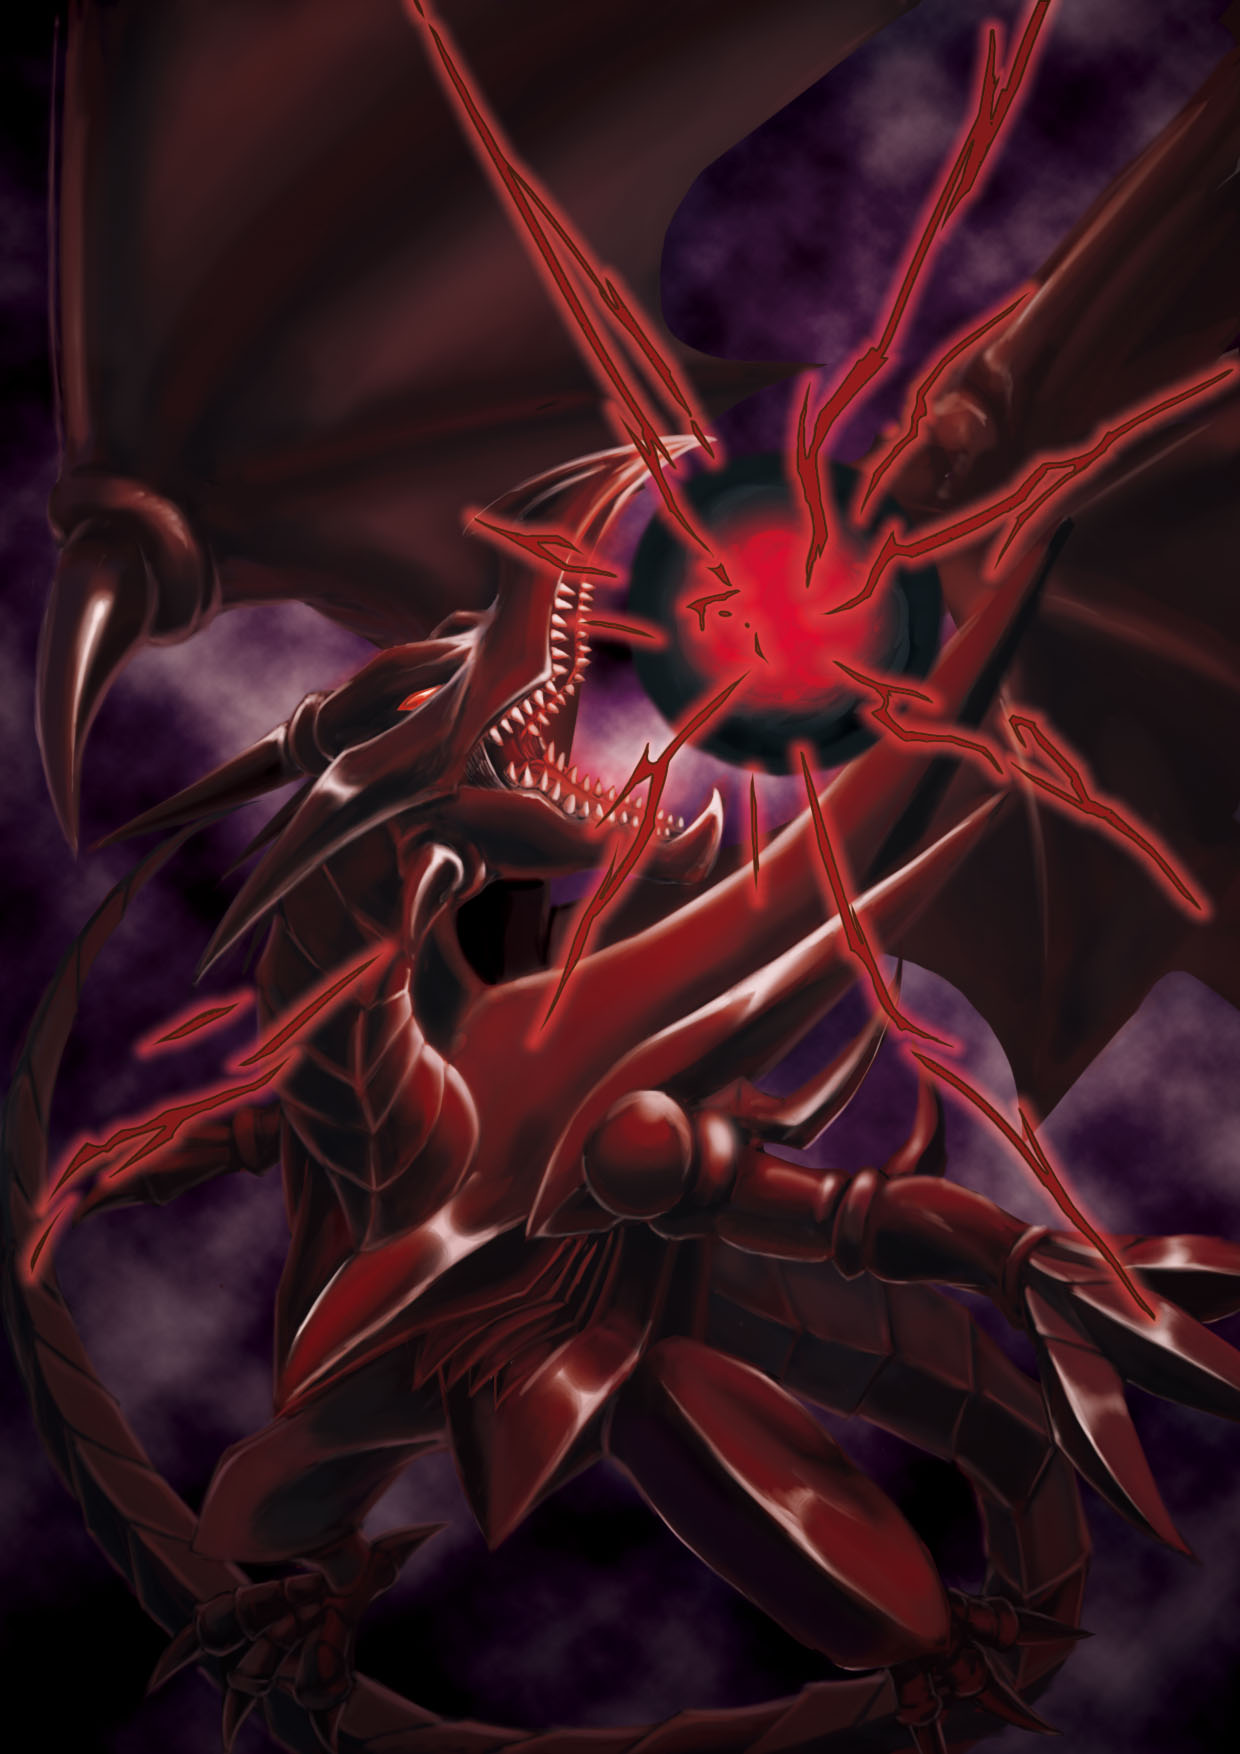 Red Eyes B Dragon Dragon Anime Trading Card Games Yu Gi Oh Artwork Digital Art Fan Art 1240x1754